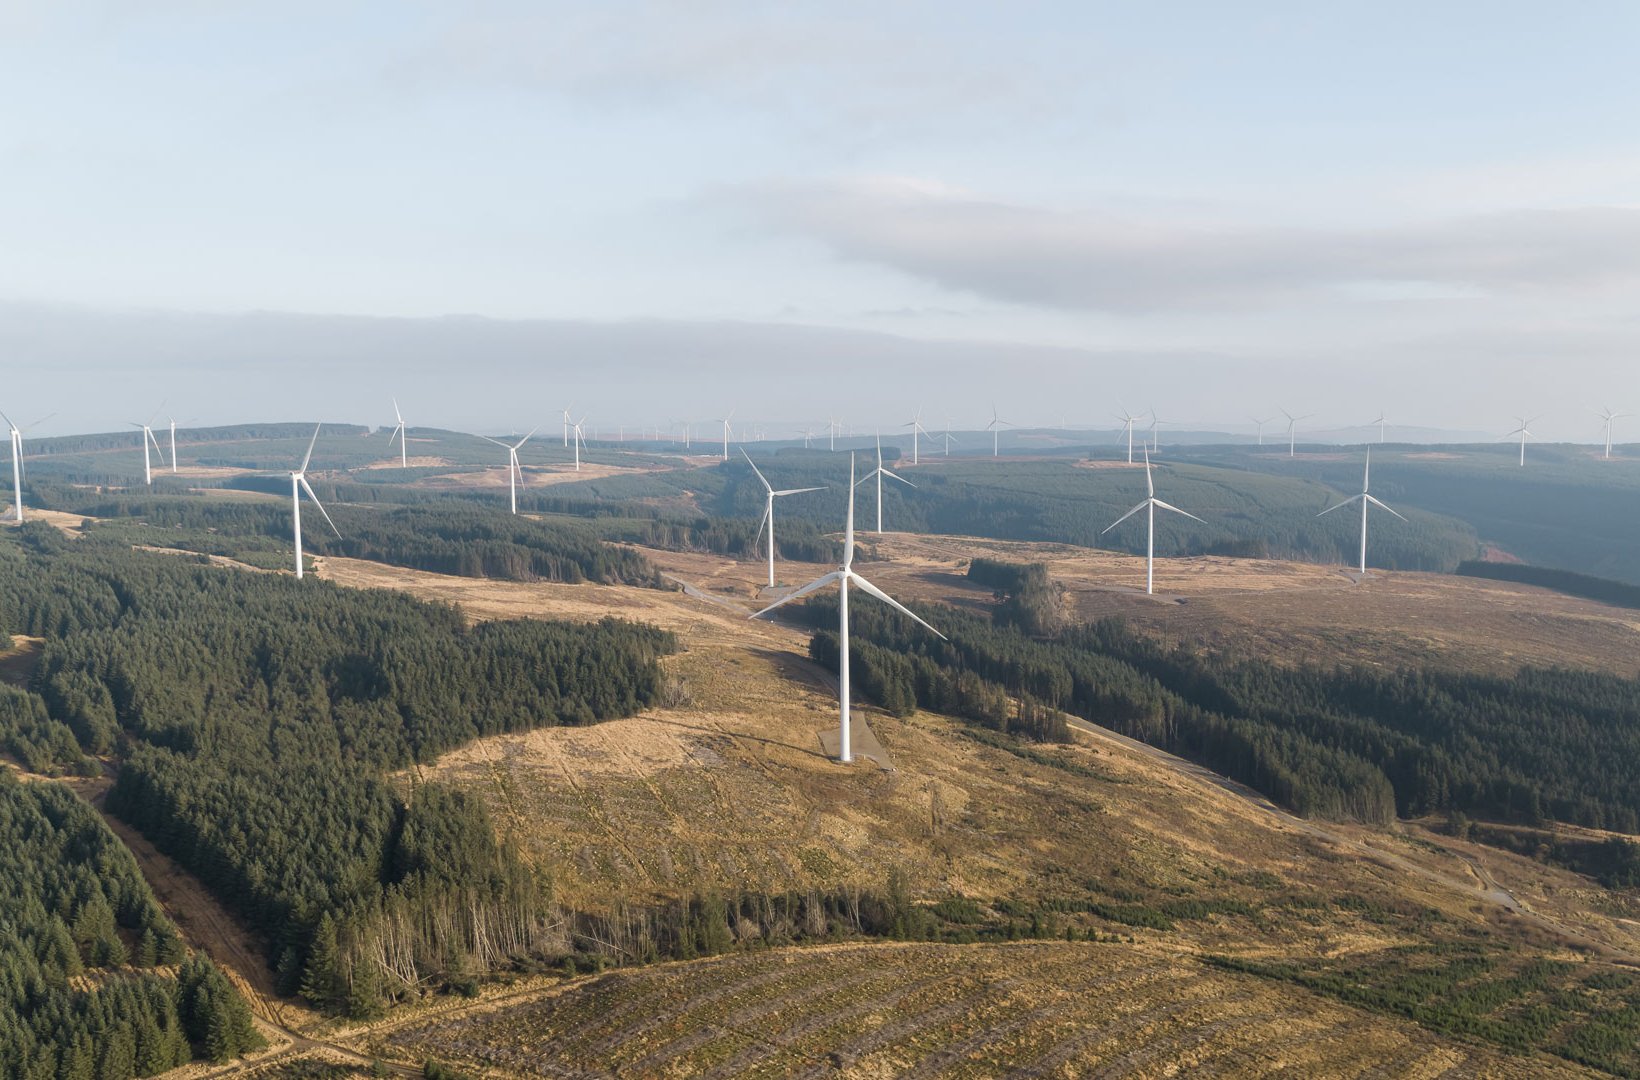 Drone photo of the land-based wind farm Pen y Cymoedd in UK